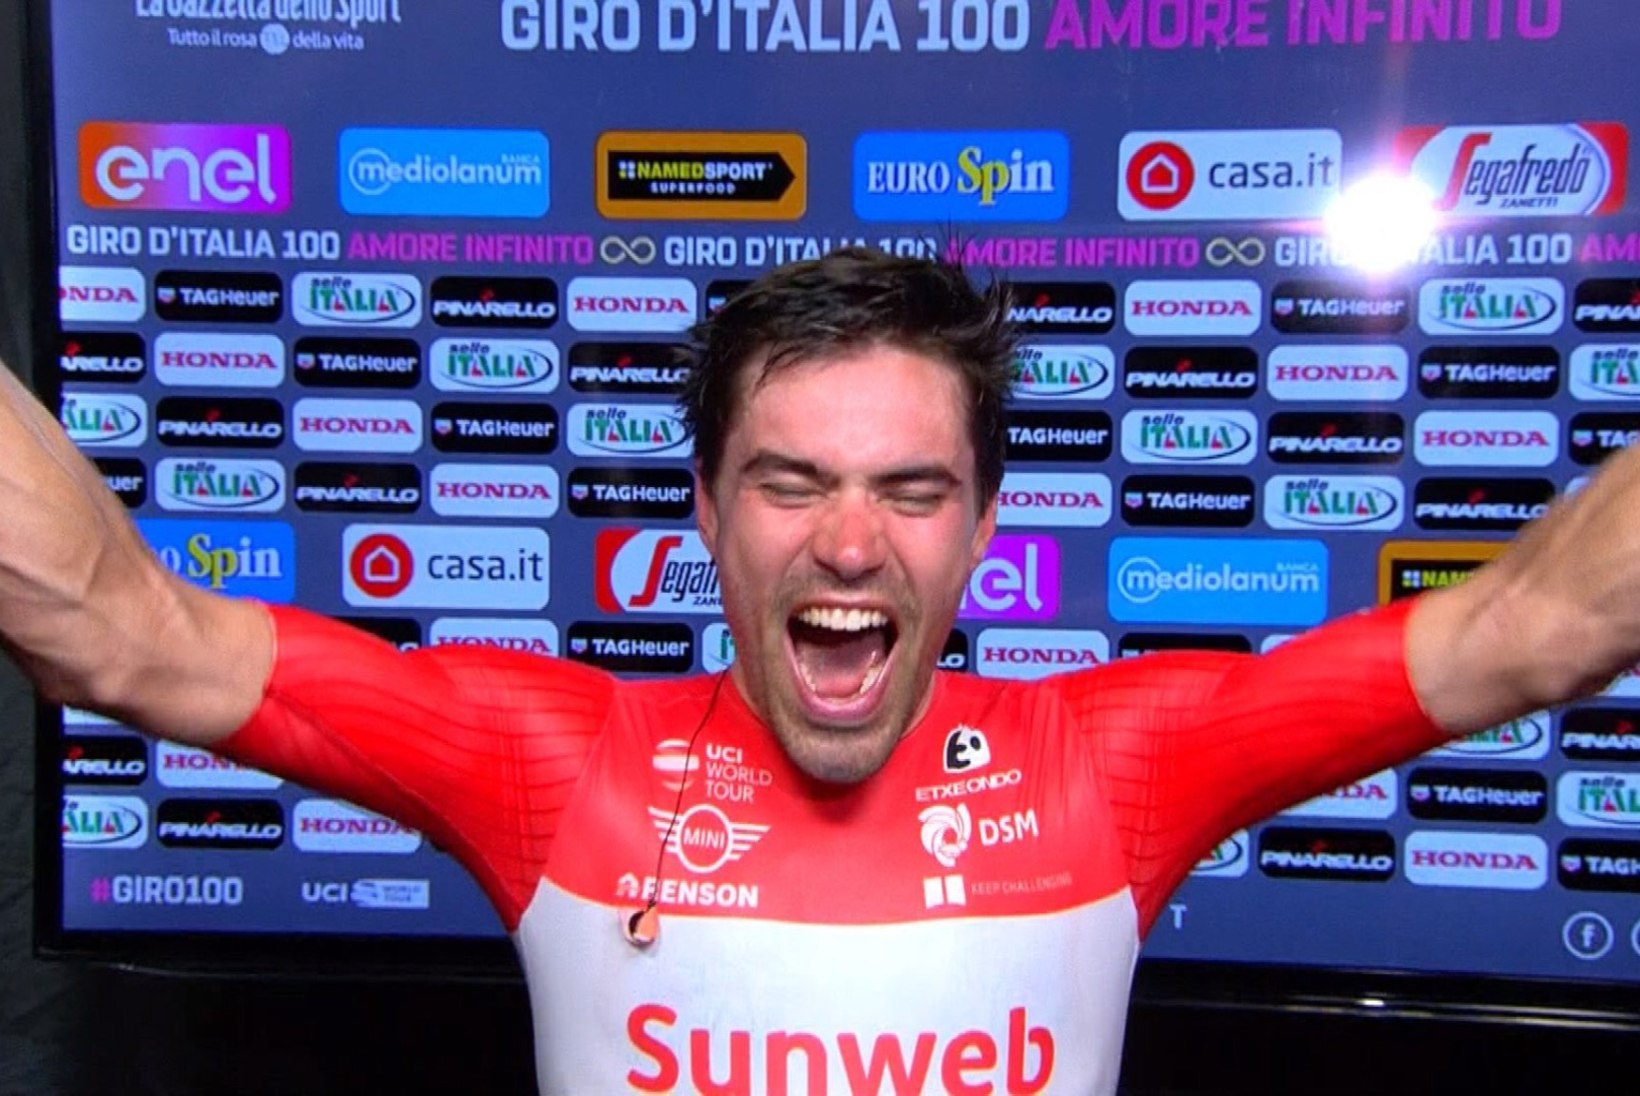 Viimast etappi neljandalt kohalt alustanud Dumoulin tegi Giro d'Italia võitmisega ajalugu